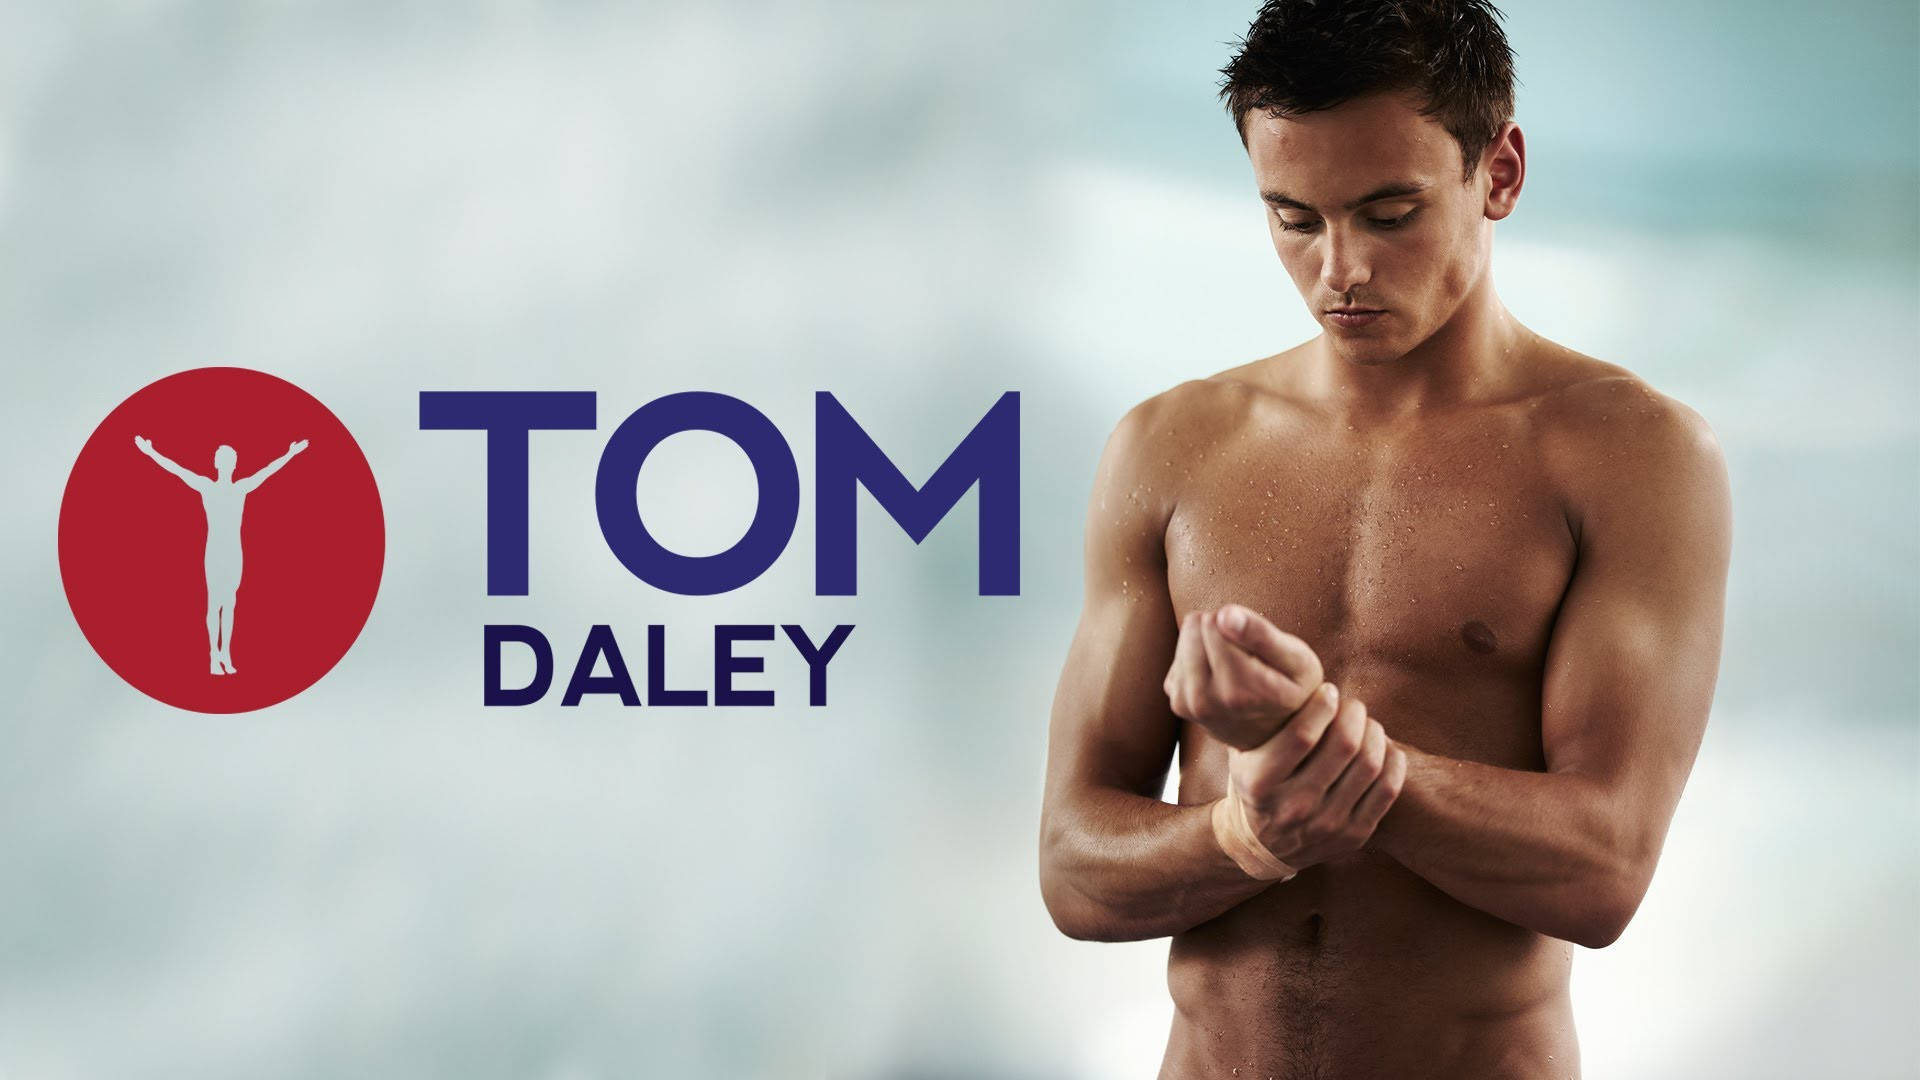 Tom Daley Logo Background